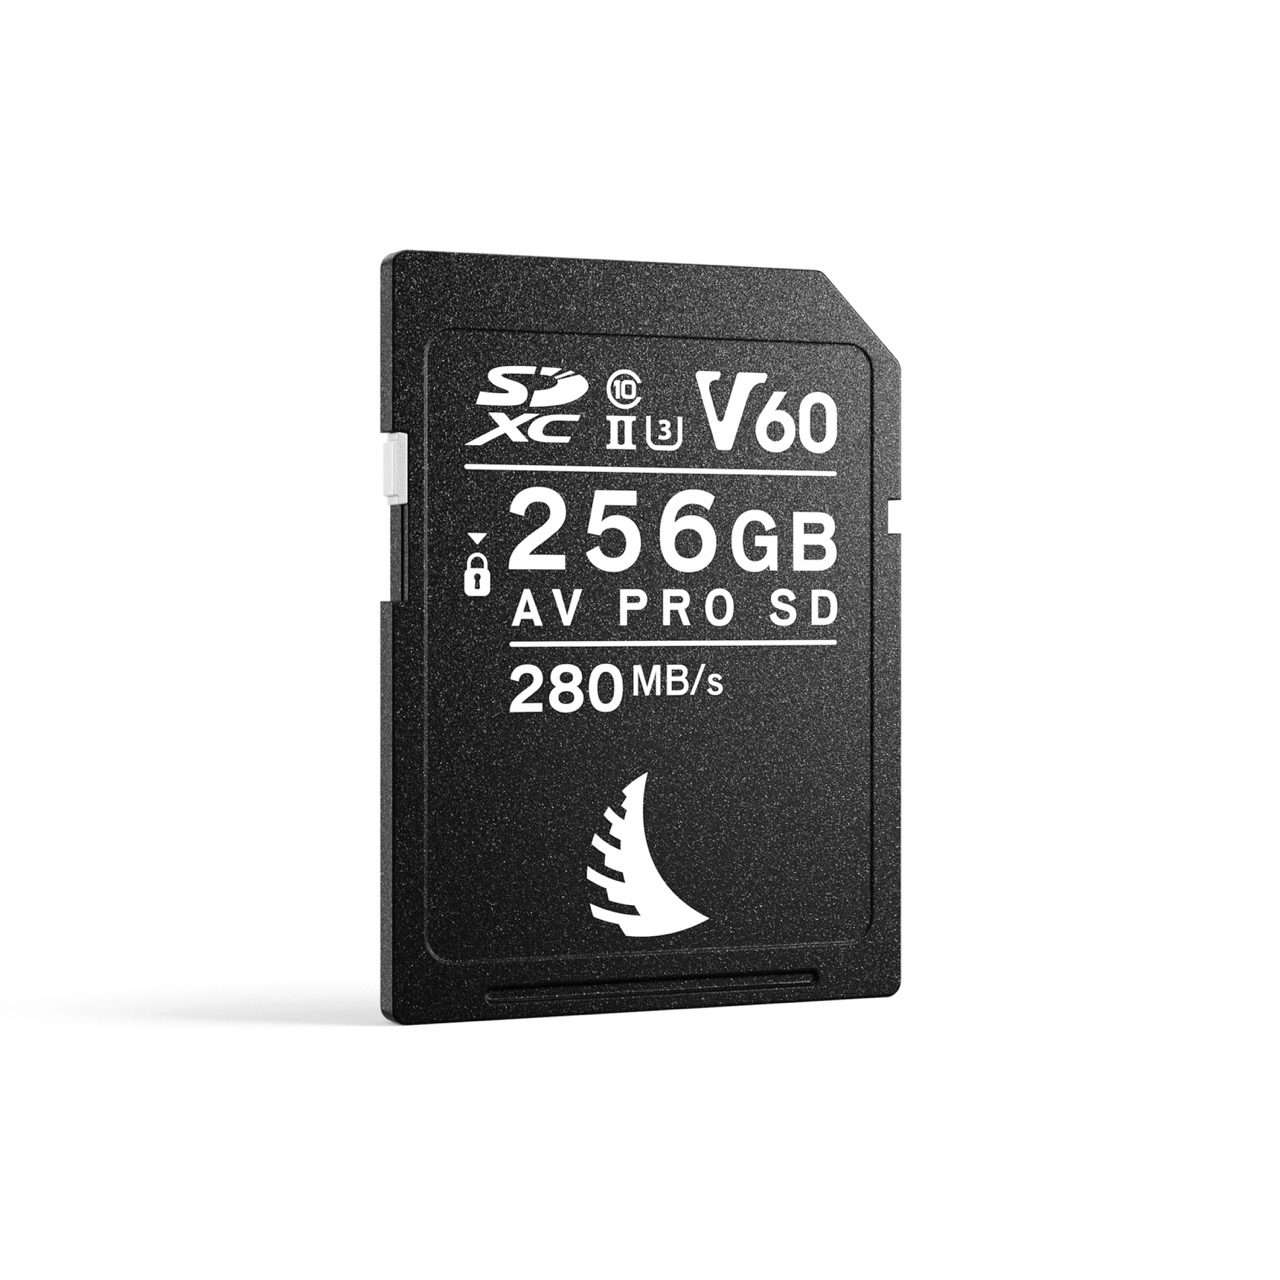 Angelbird AV PRO SD V60 MK2 256GB Speicherkarte, Frontal Schräg